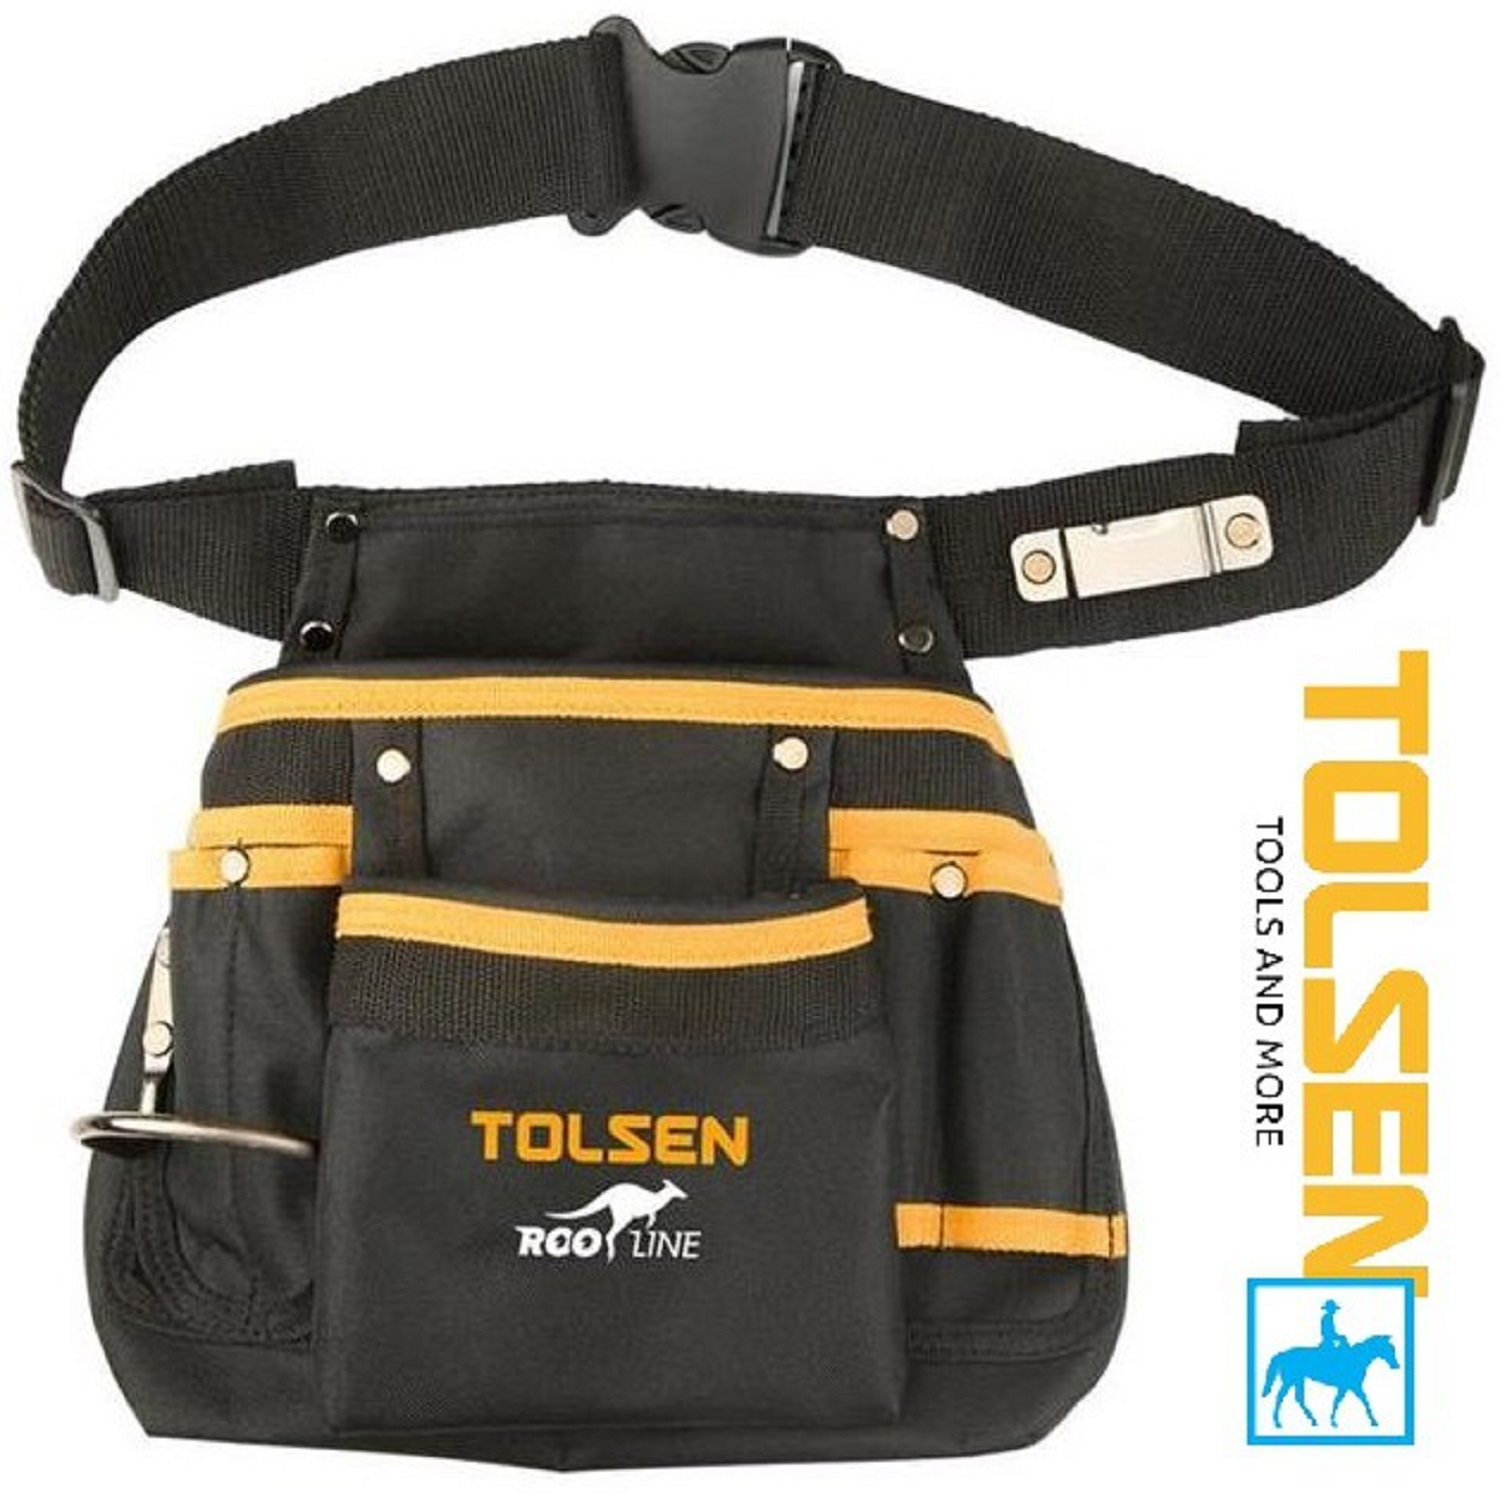 Hình ảnh 4 của mặt hàng Túi đựng đồ nghề TOLSEN 80120